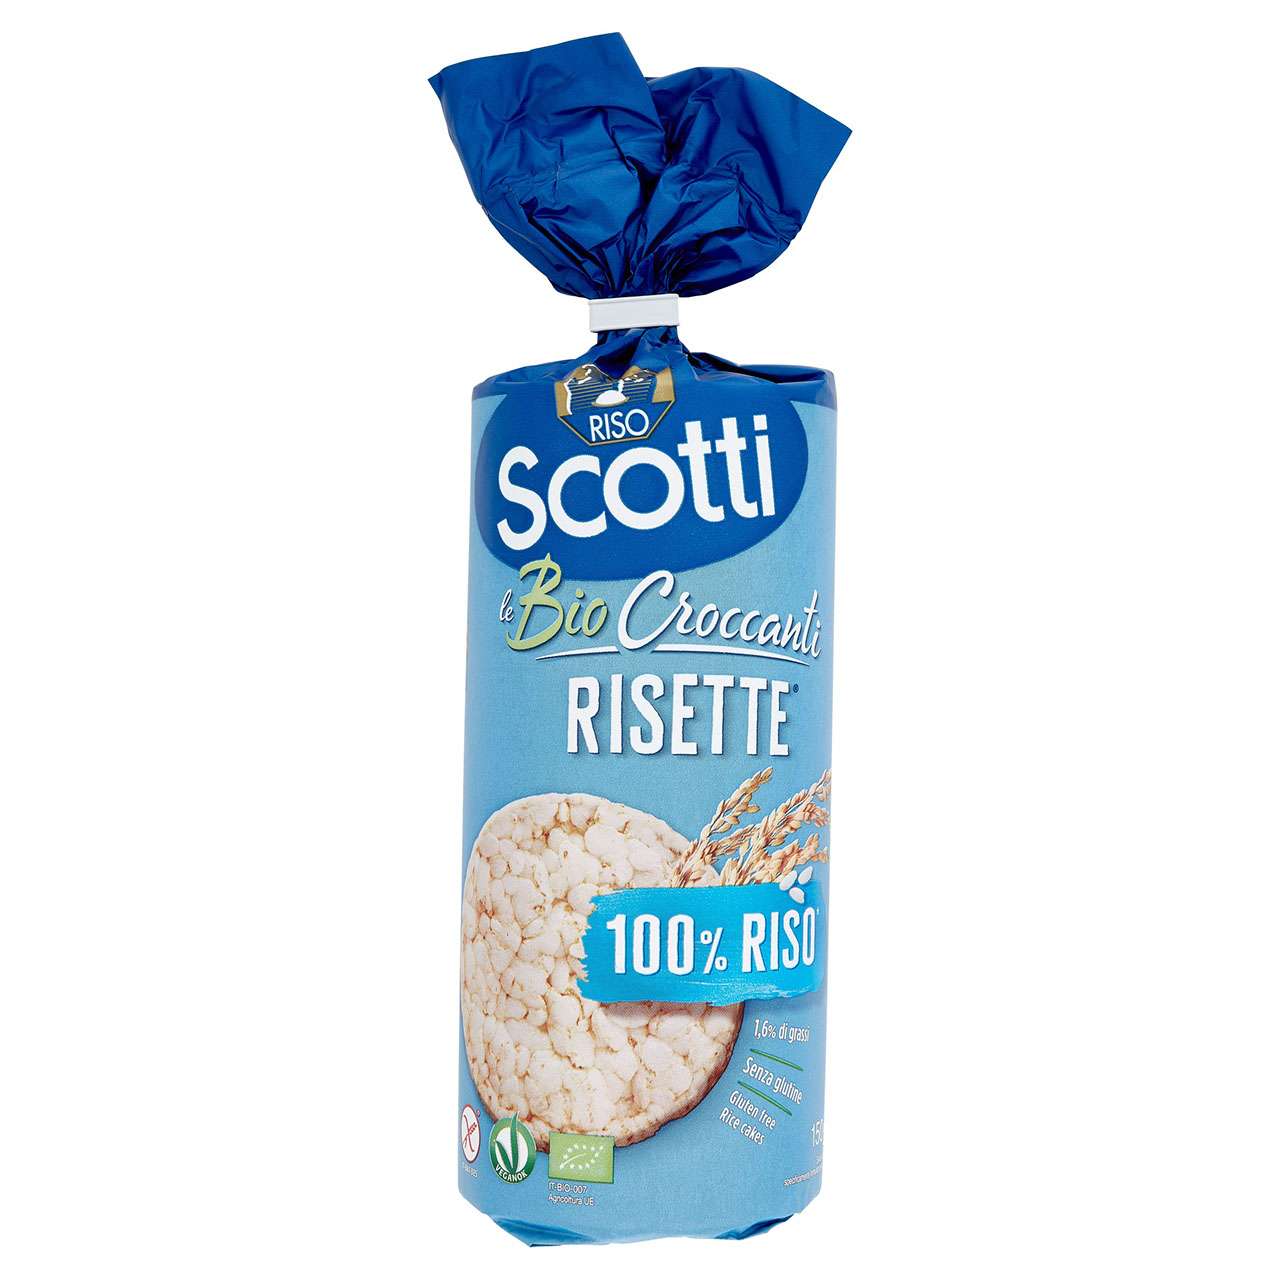 Scotti Risotto, Riso Scotti Le Bio Crispy Risette 100% Rice*, Riso Scotti, Scotti Risotto Rice